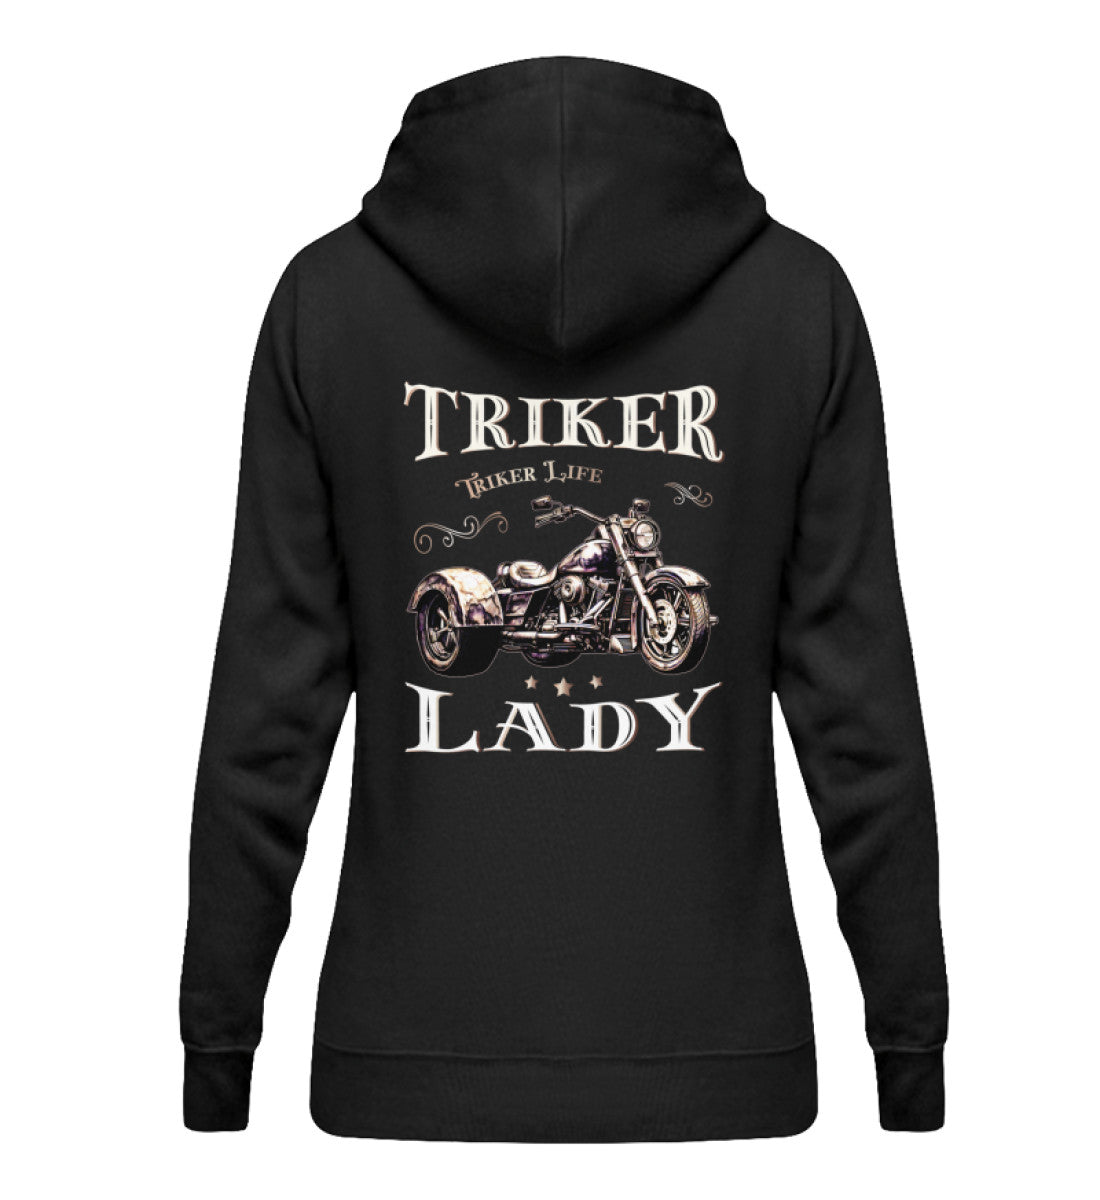 Ein Damen Hoodie für Trike Fahrerinnen von Wingbikers mit dem Aufdruck, Triker Lady - Triker Life, im vintage Stil, als Back Print, in schwarz.